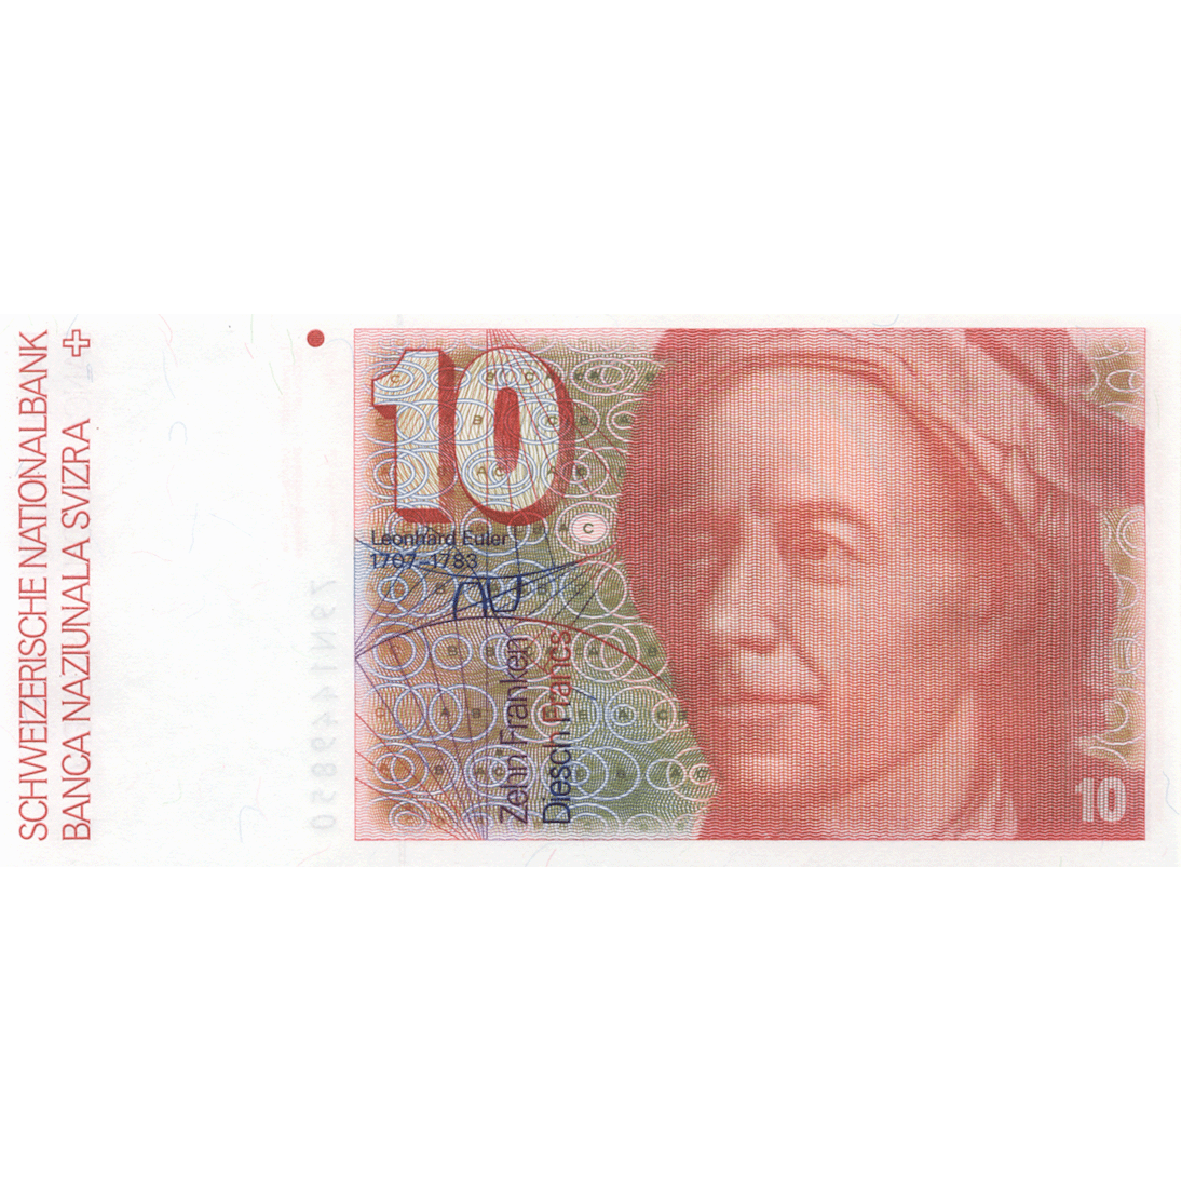 Schweizerische Eidgenossenschaft, 10 Franken (6. Banknotenserie, in Kurs 1976-2000) (obverse)